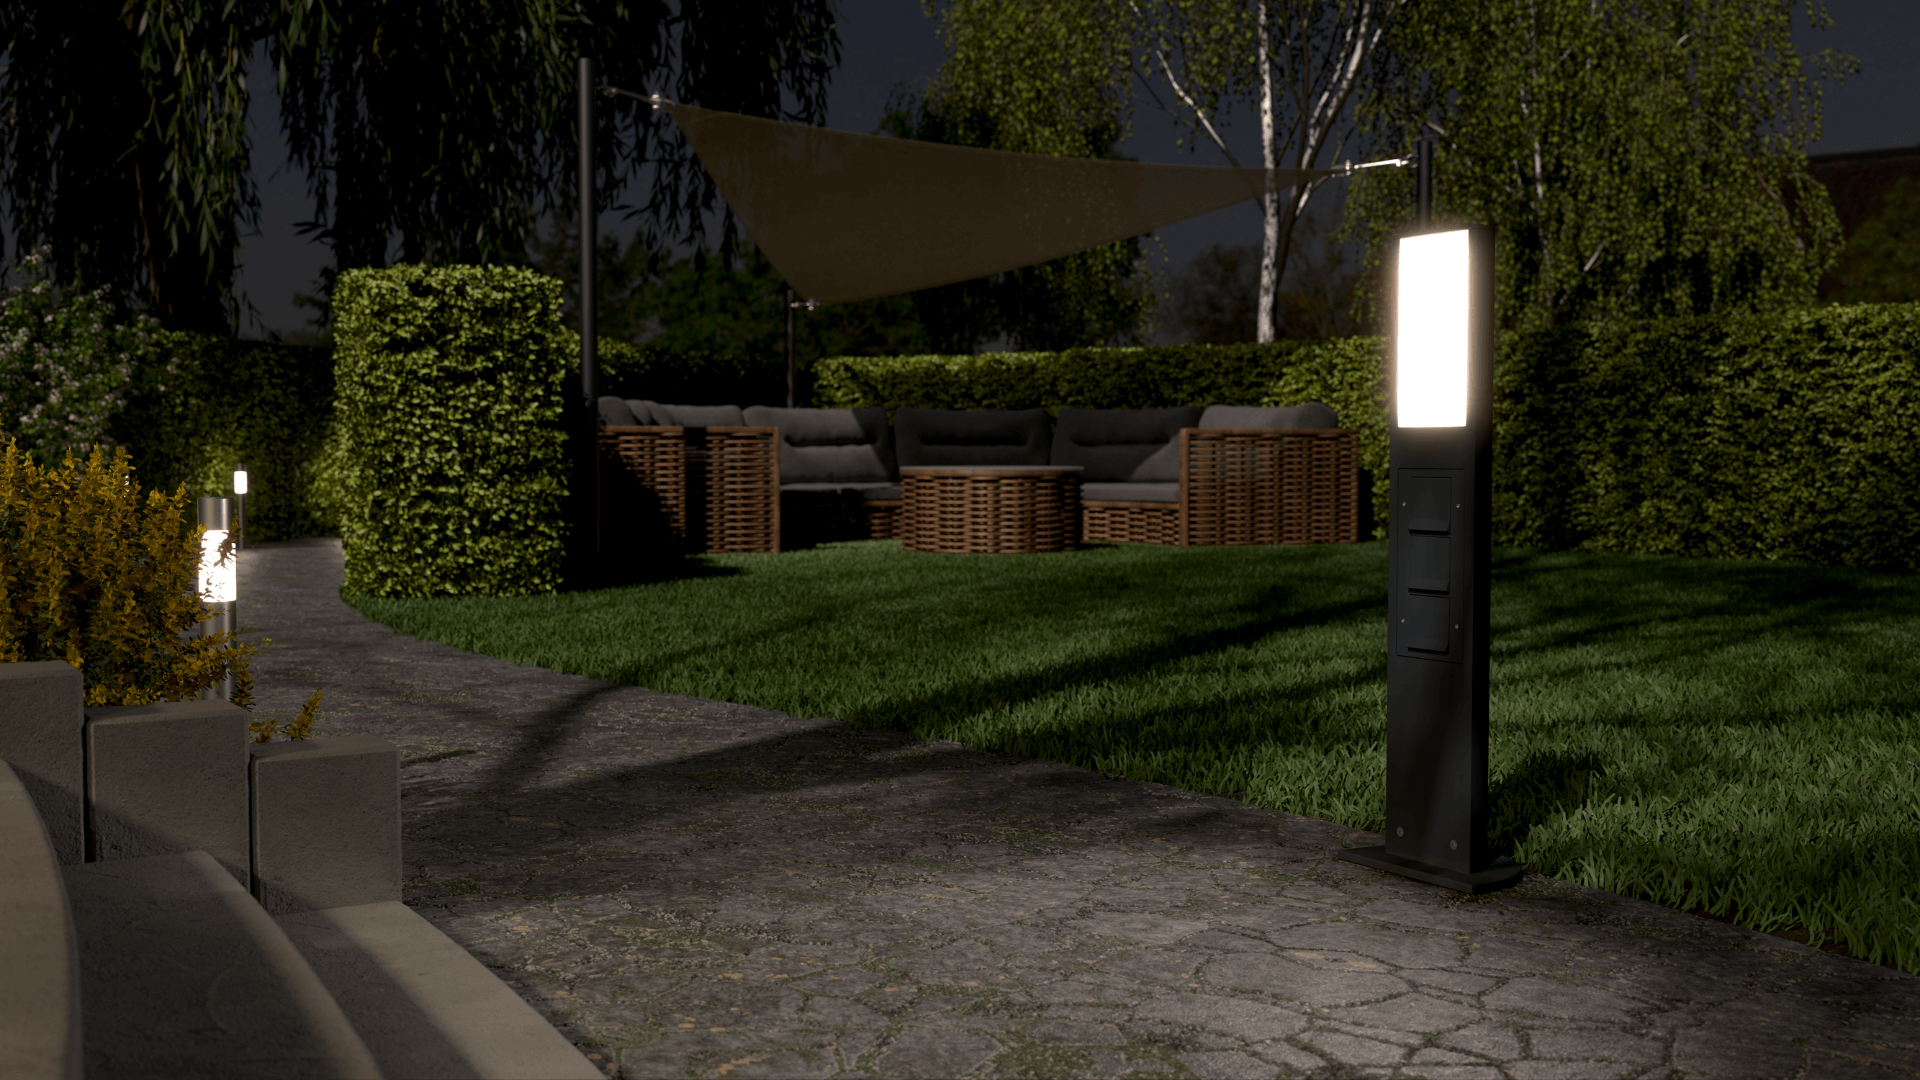 Stroom en licht voor tuin en terras: Gira licht- en energiezuil. ✓ Wandcontactdozen  ✓ Modern design ✓ Weerbestendig.